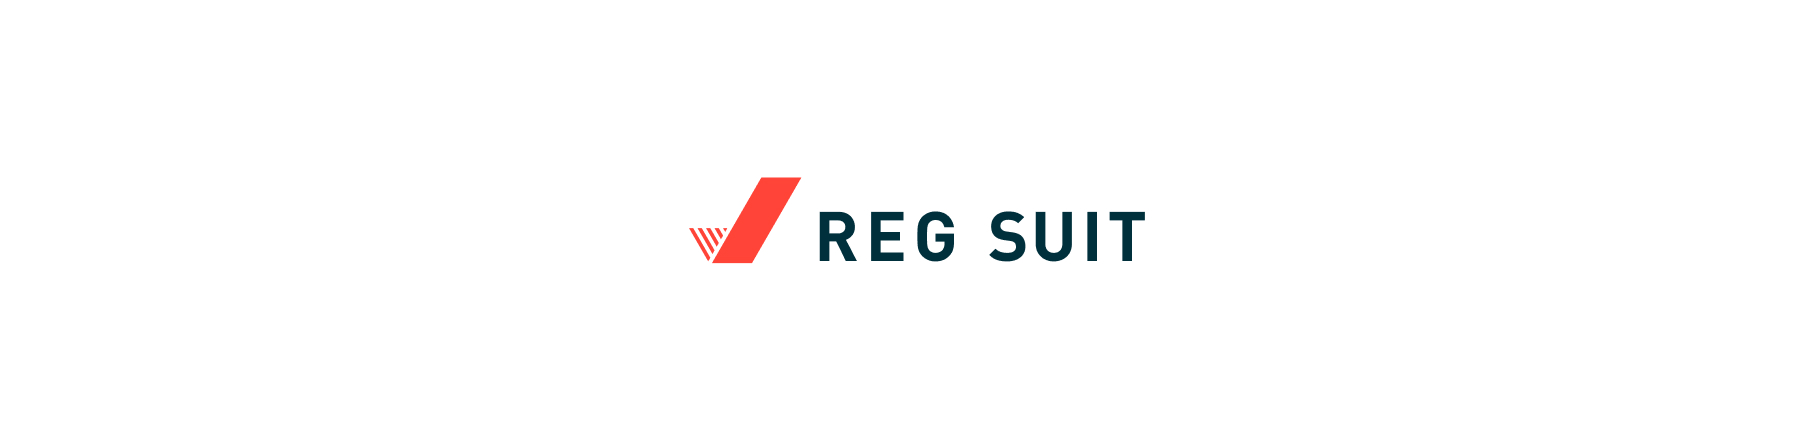 reg-suit